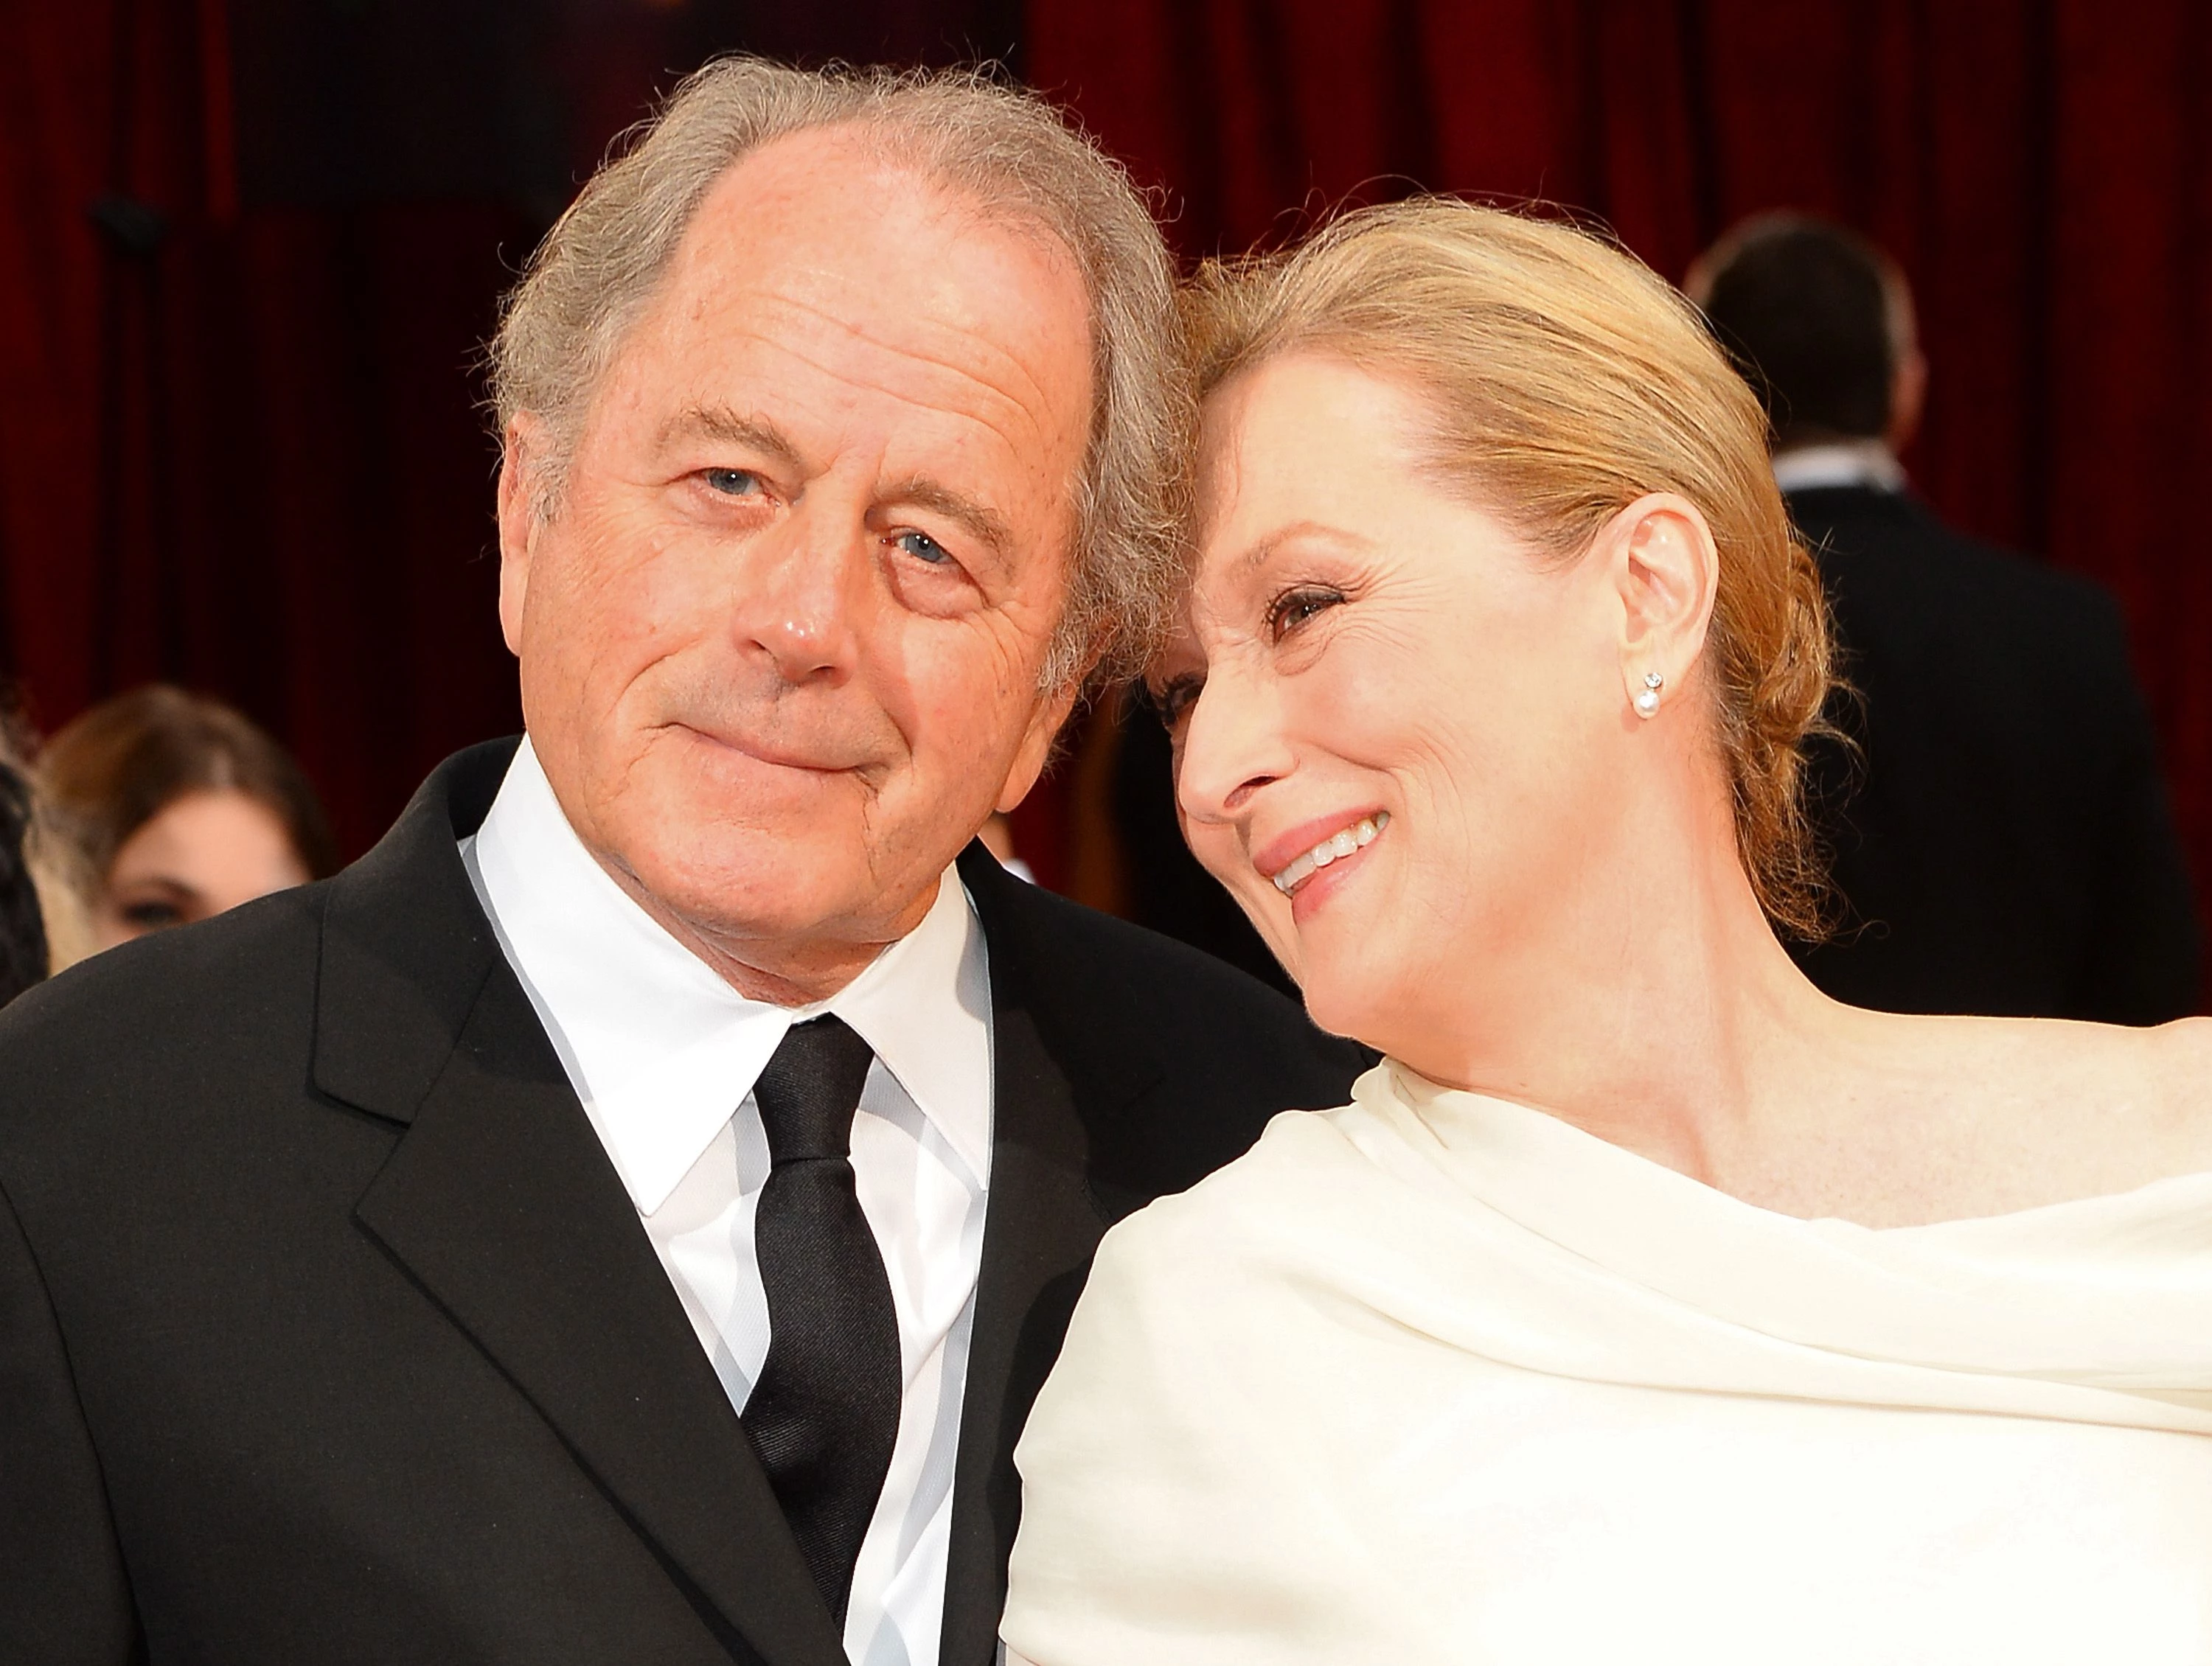 Meryl Streep and Don Gummer's Relationship